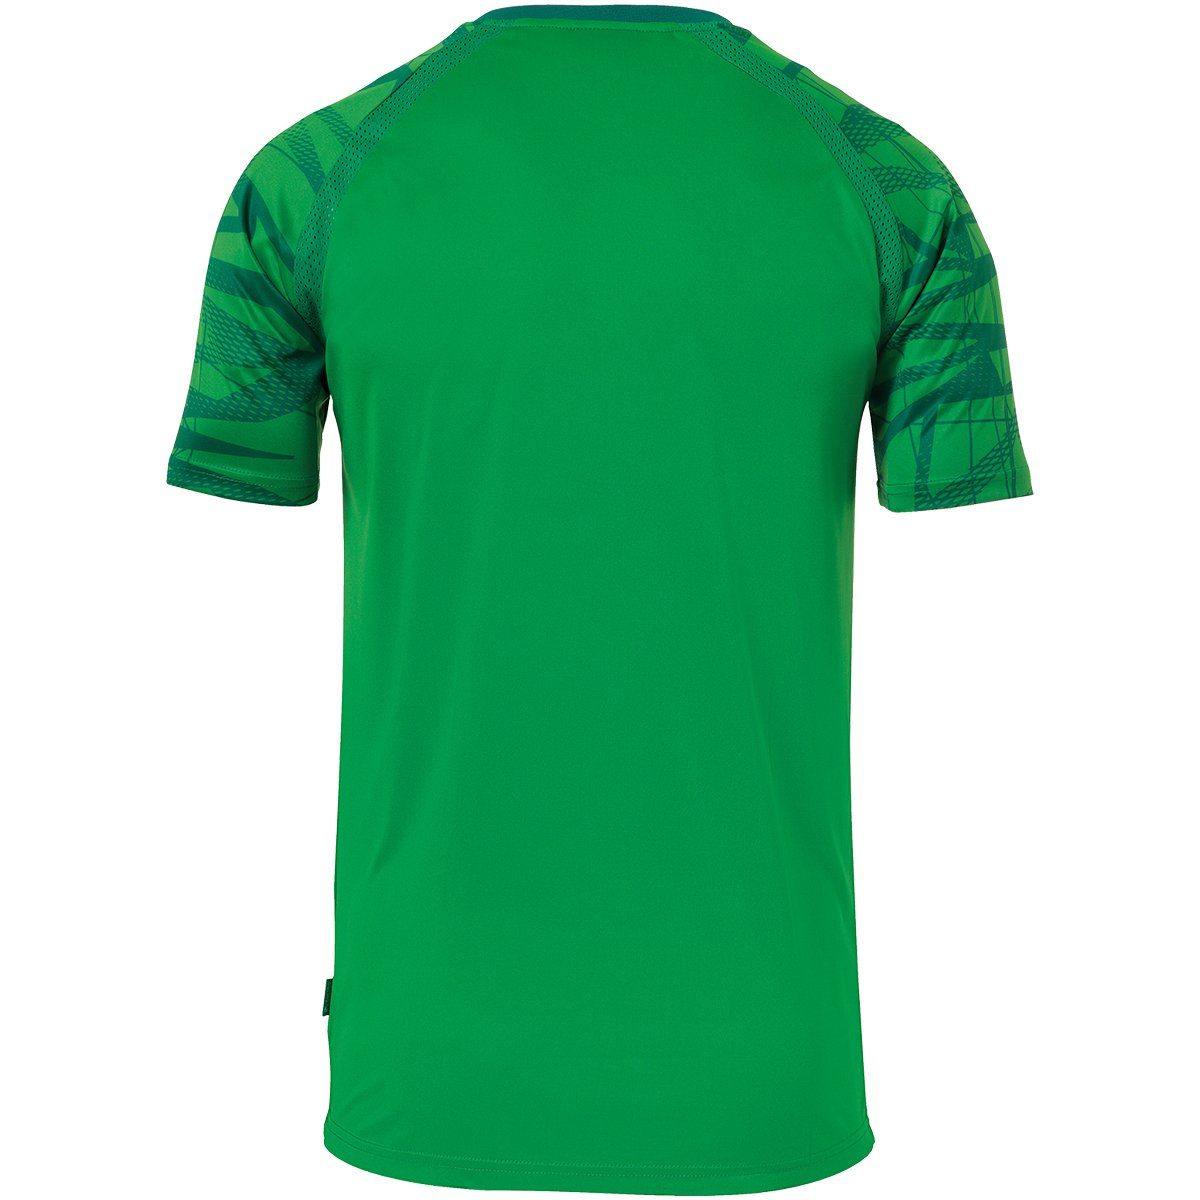 TRIKOT uhlsport KURZARM Trainings-T-Shirt atmungsaktiv Trainingsshirt grün/lagune uhlsport 25 GOAL